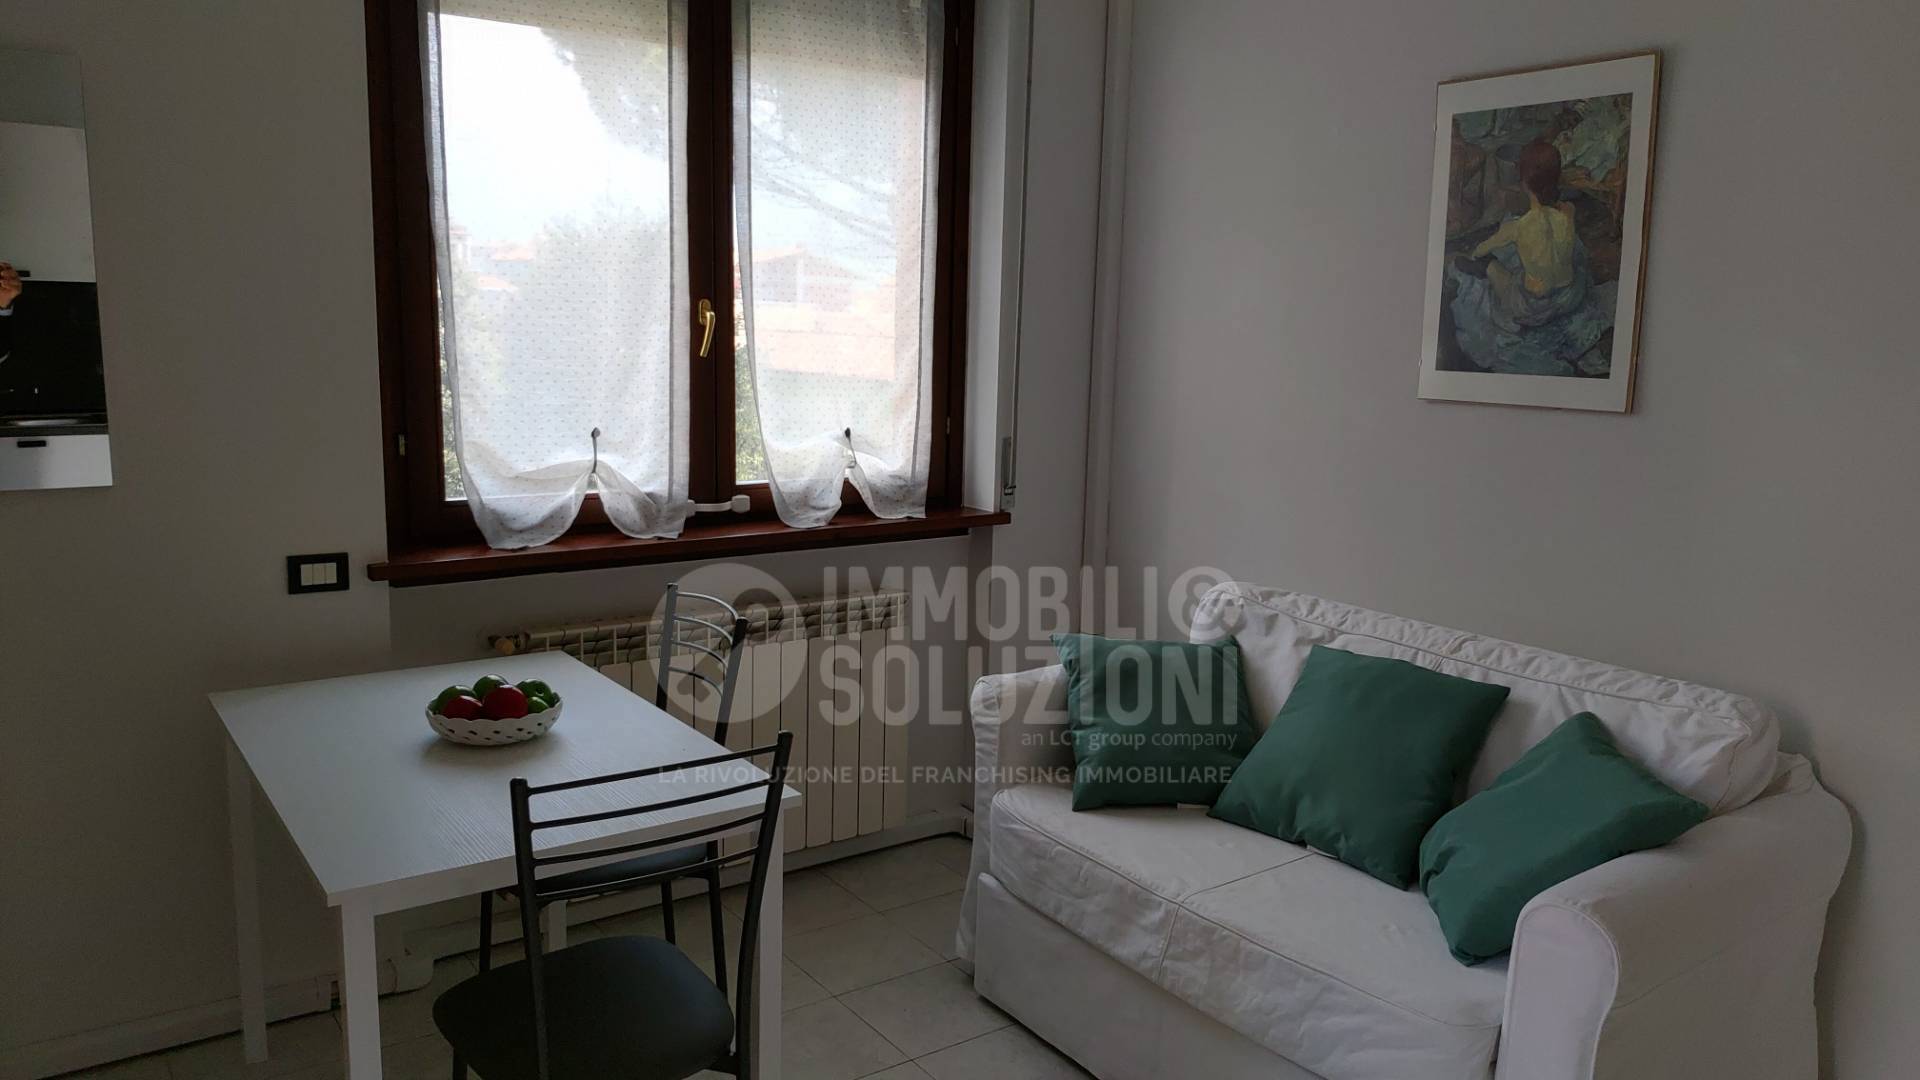 Appartamento in affitto a Alzano Lombardo, 2 locali, prezzo € 470 | CambioCasa.it